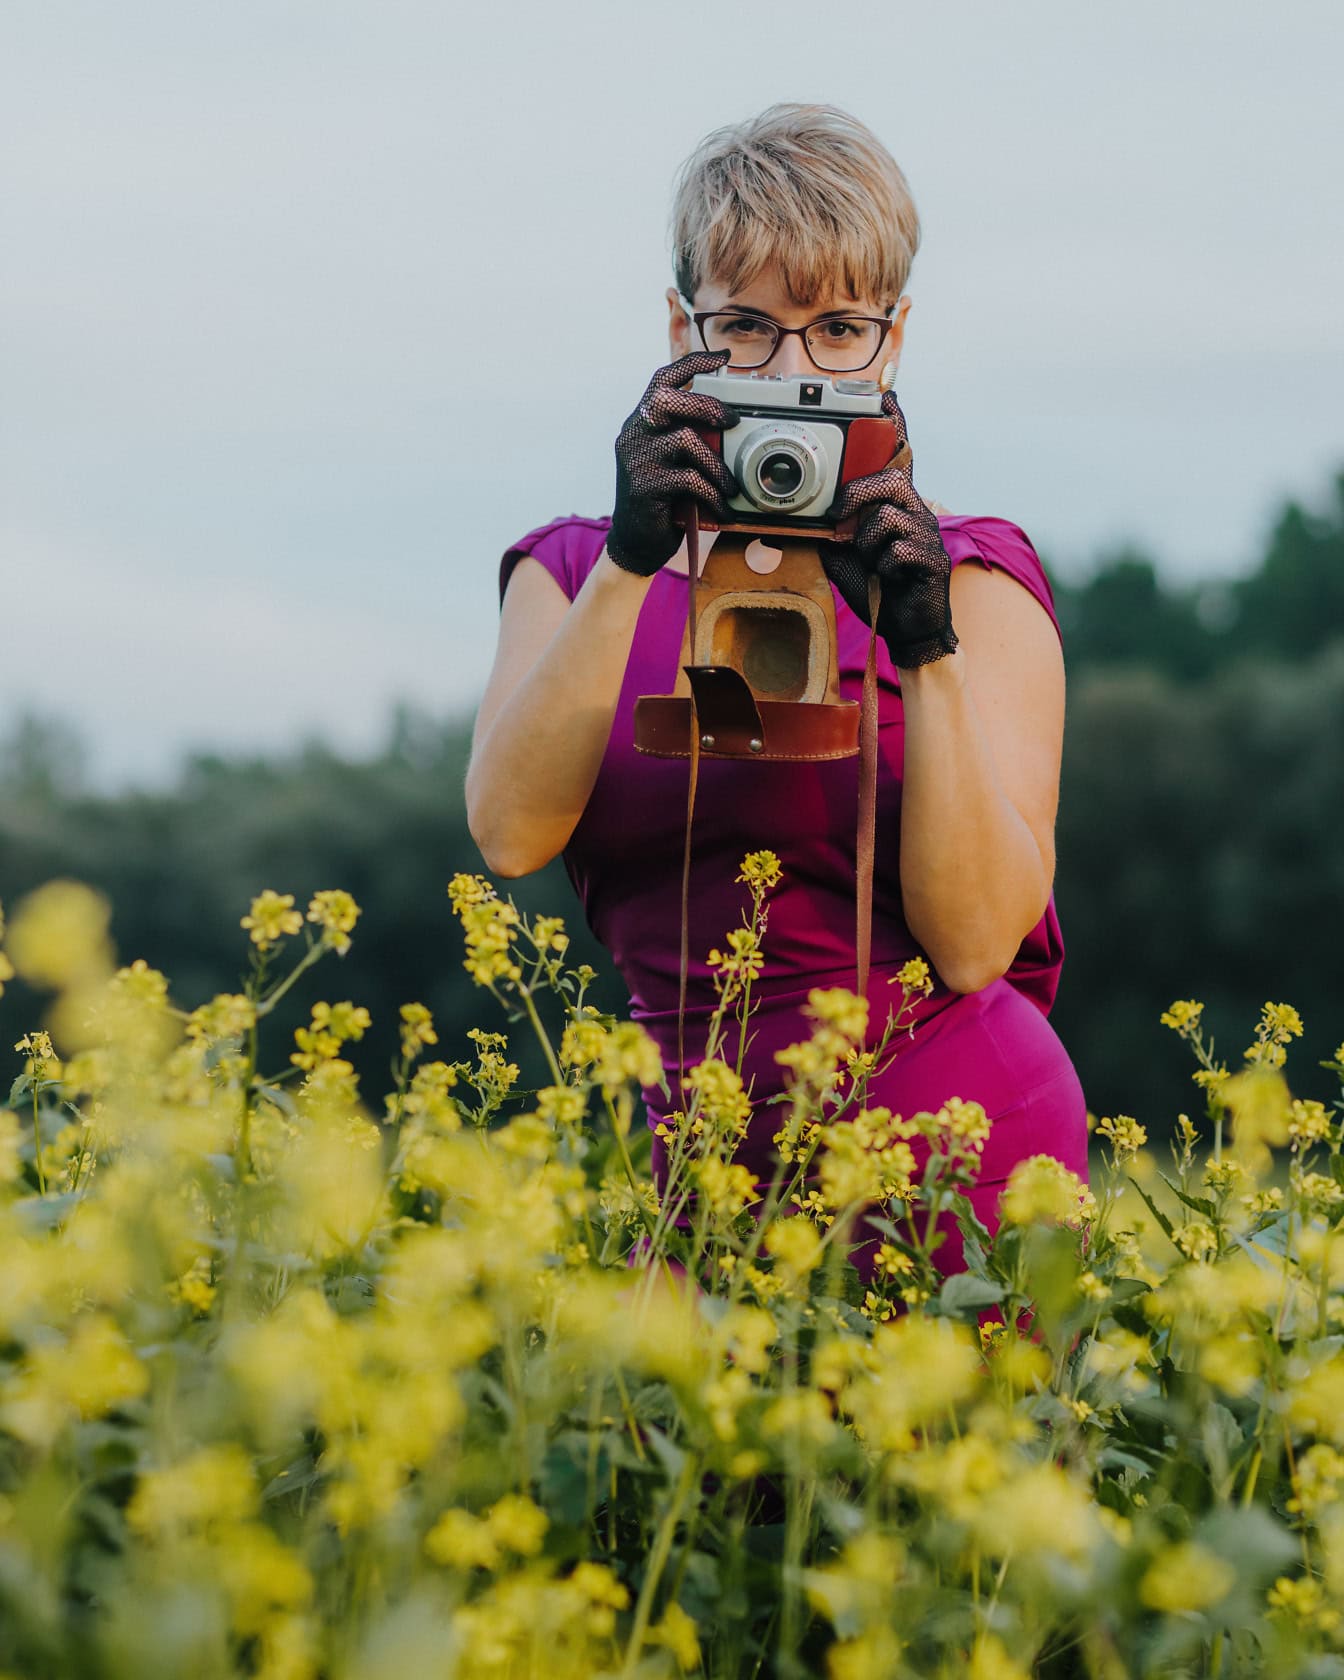 De vrouw die purpere kleding en kanthandschoenen draagt, houdt analoge oude camera in een gebied van gele bloemen